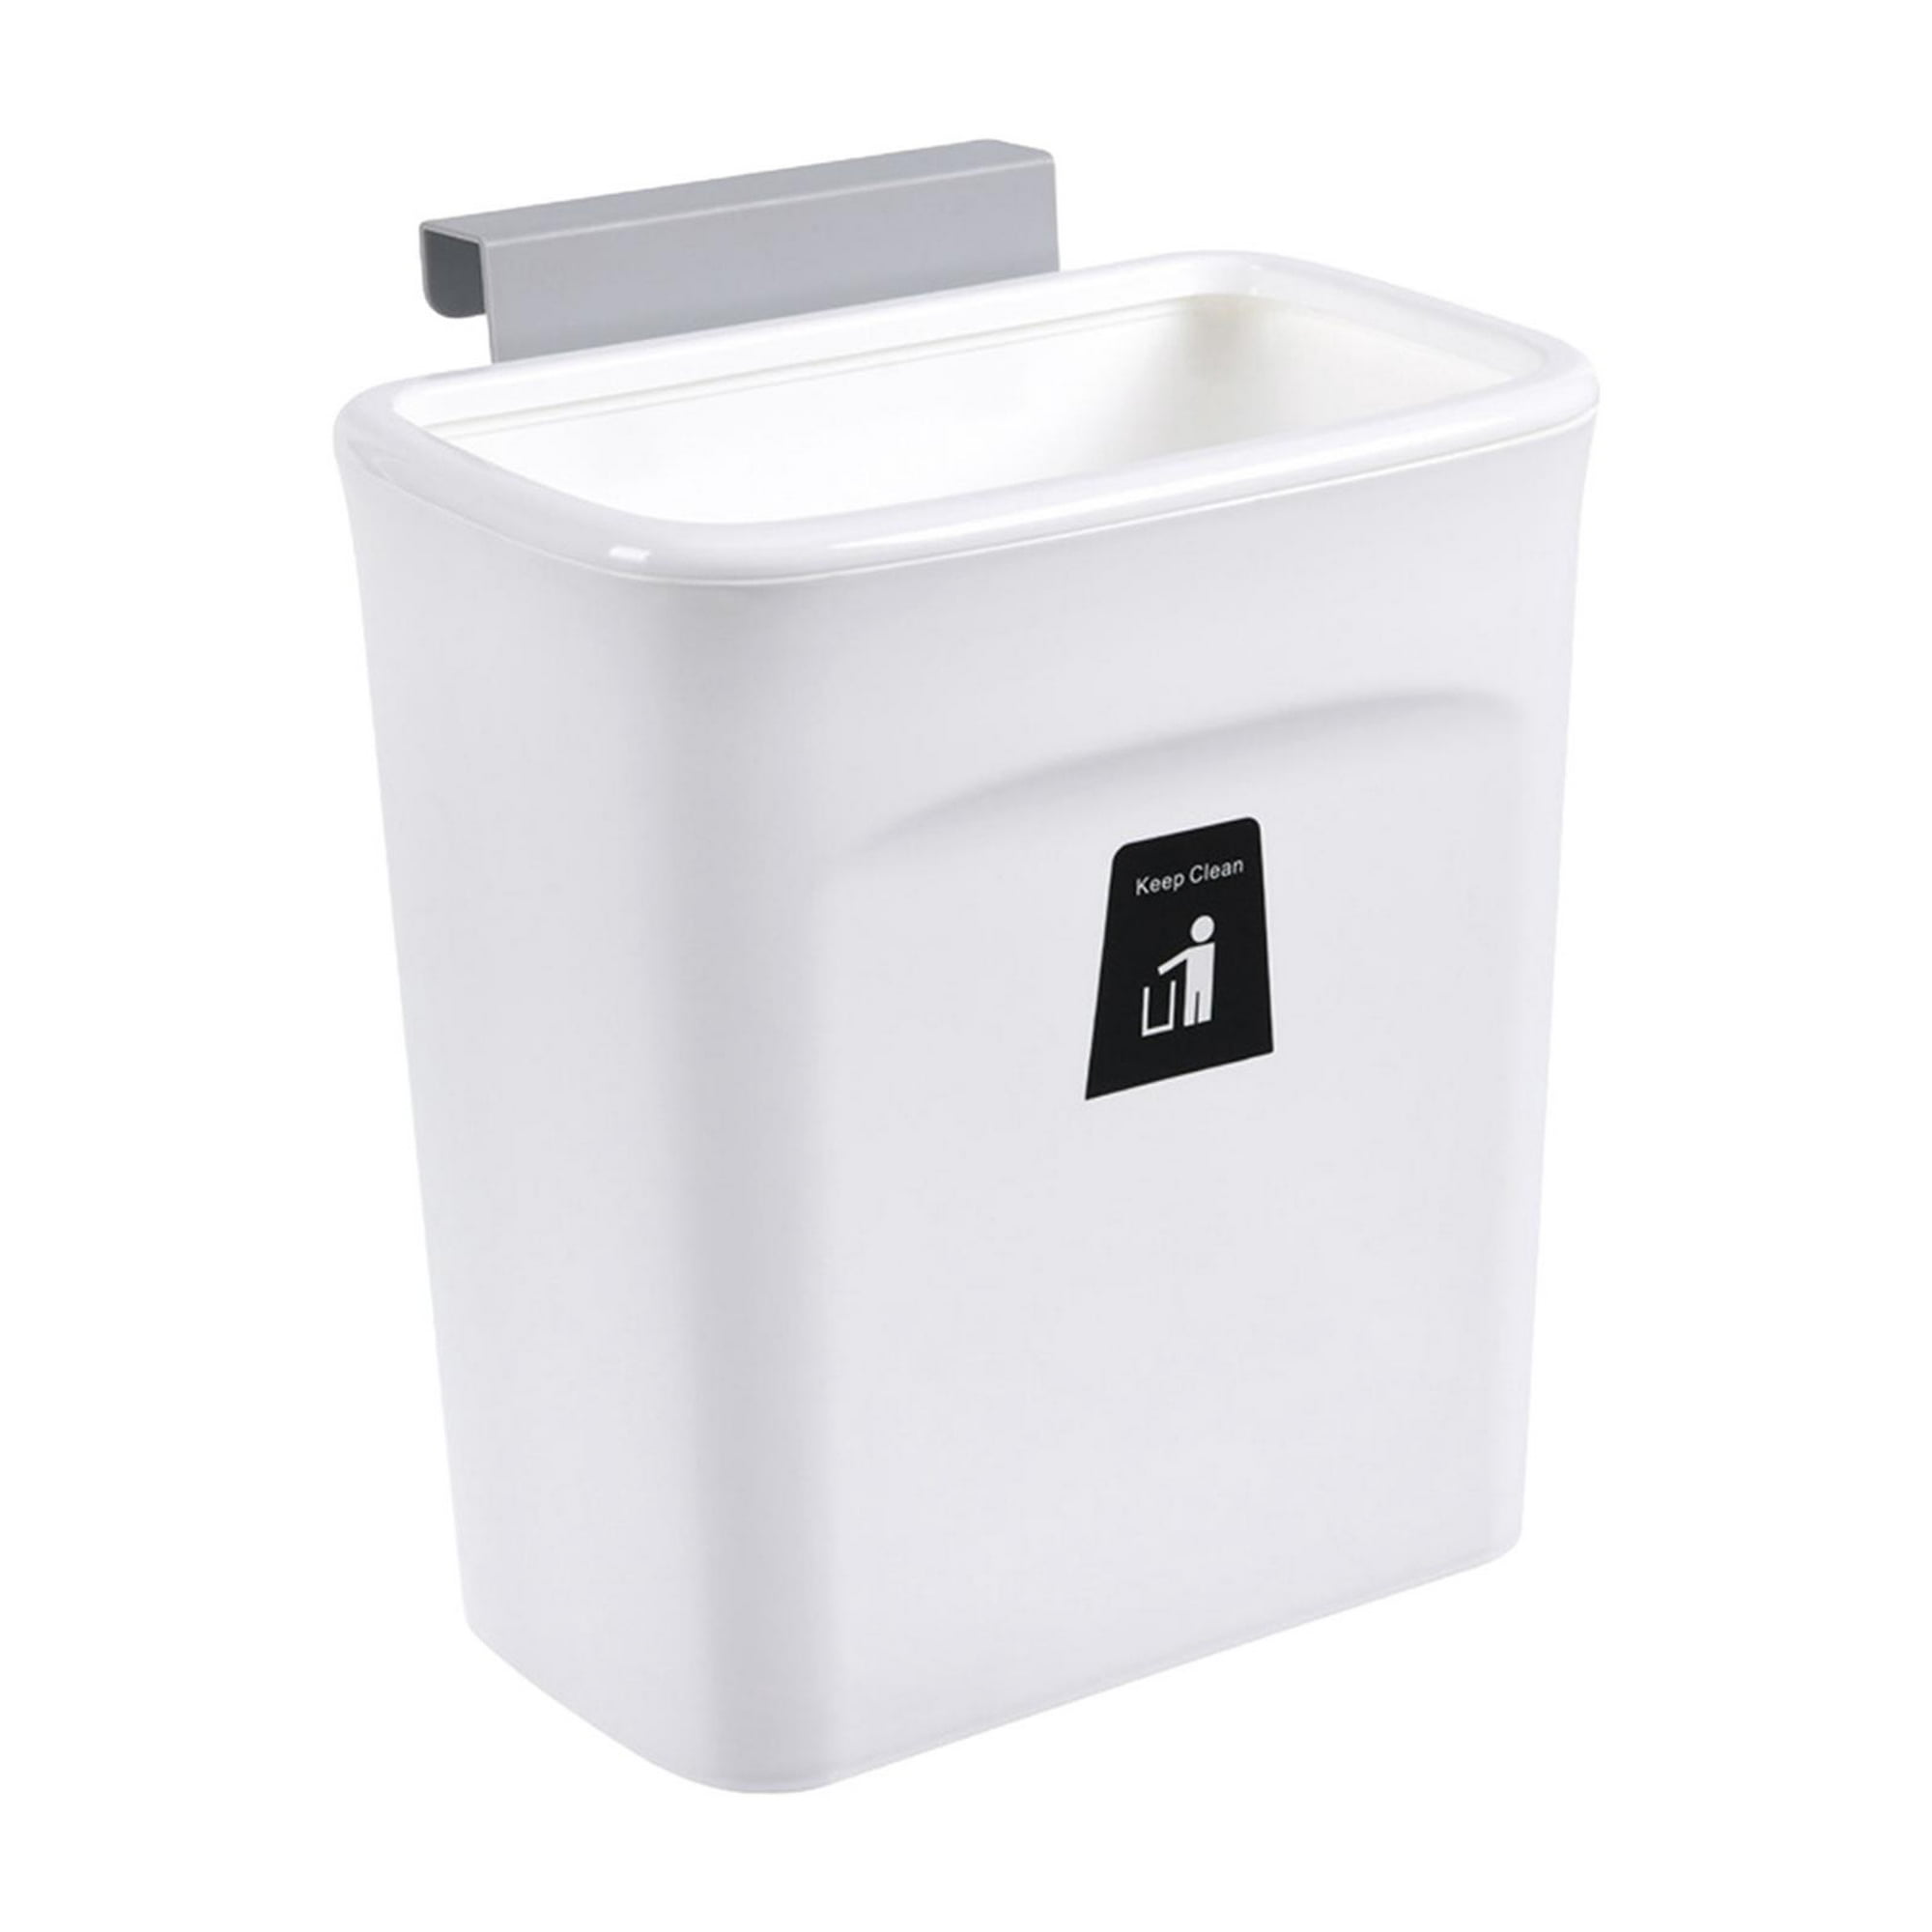 Rubbermaid Cubo de basura pequeño para cocina, baño, cesta de basura debajo  del fregadero, plástico, blanco, 9 galones, 1 unidad (paquete de 1)